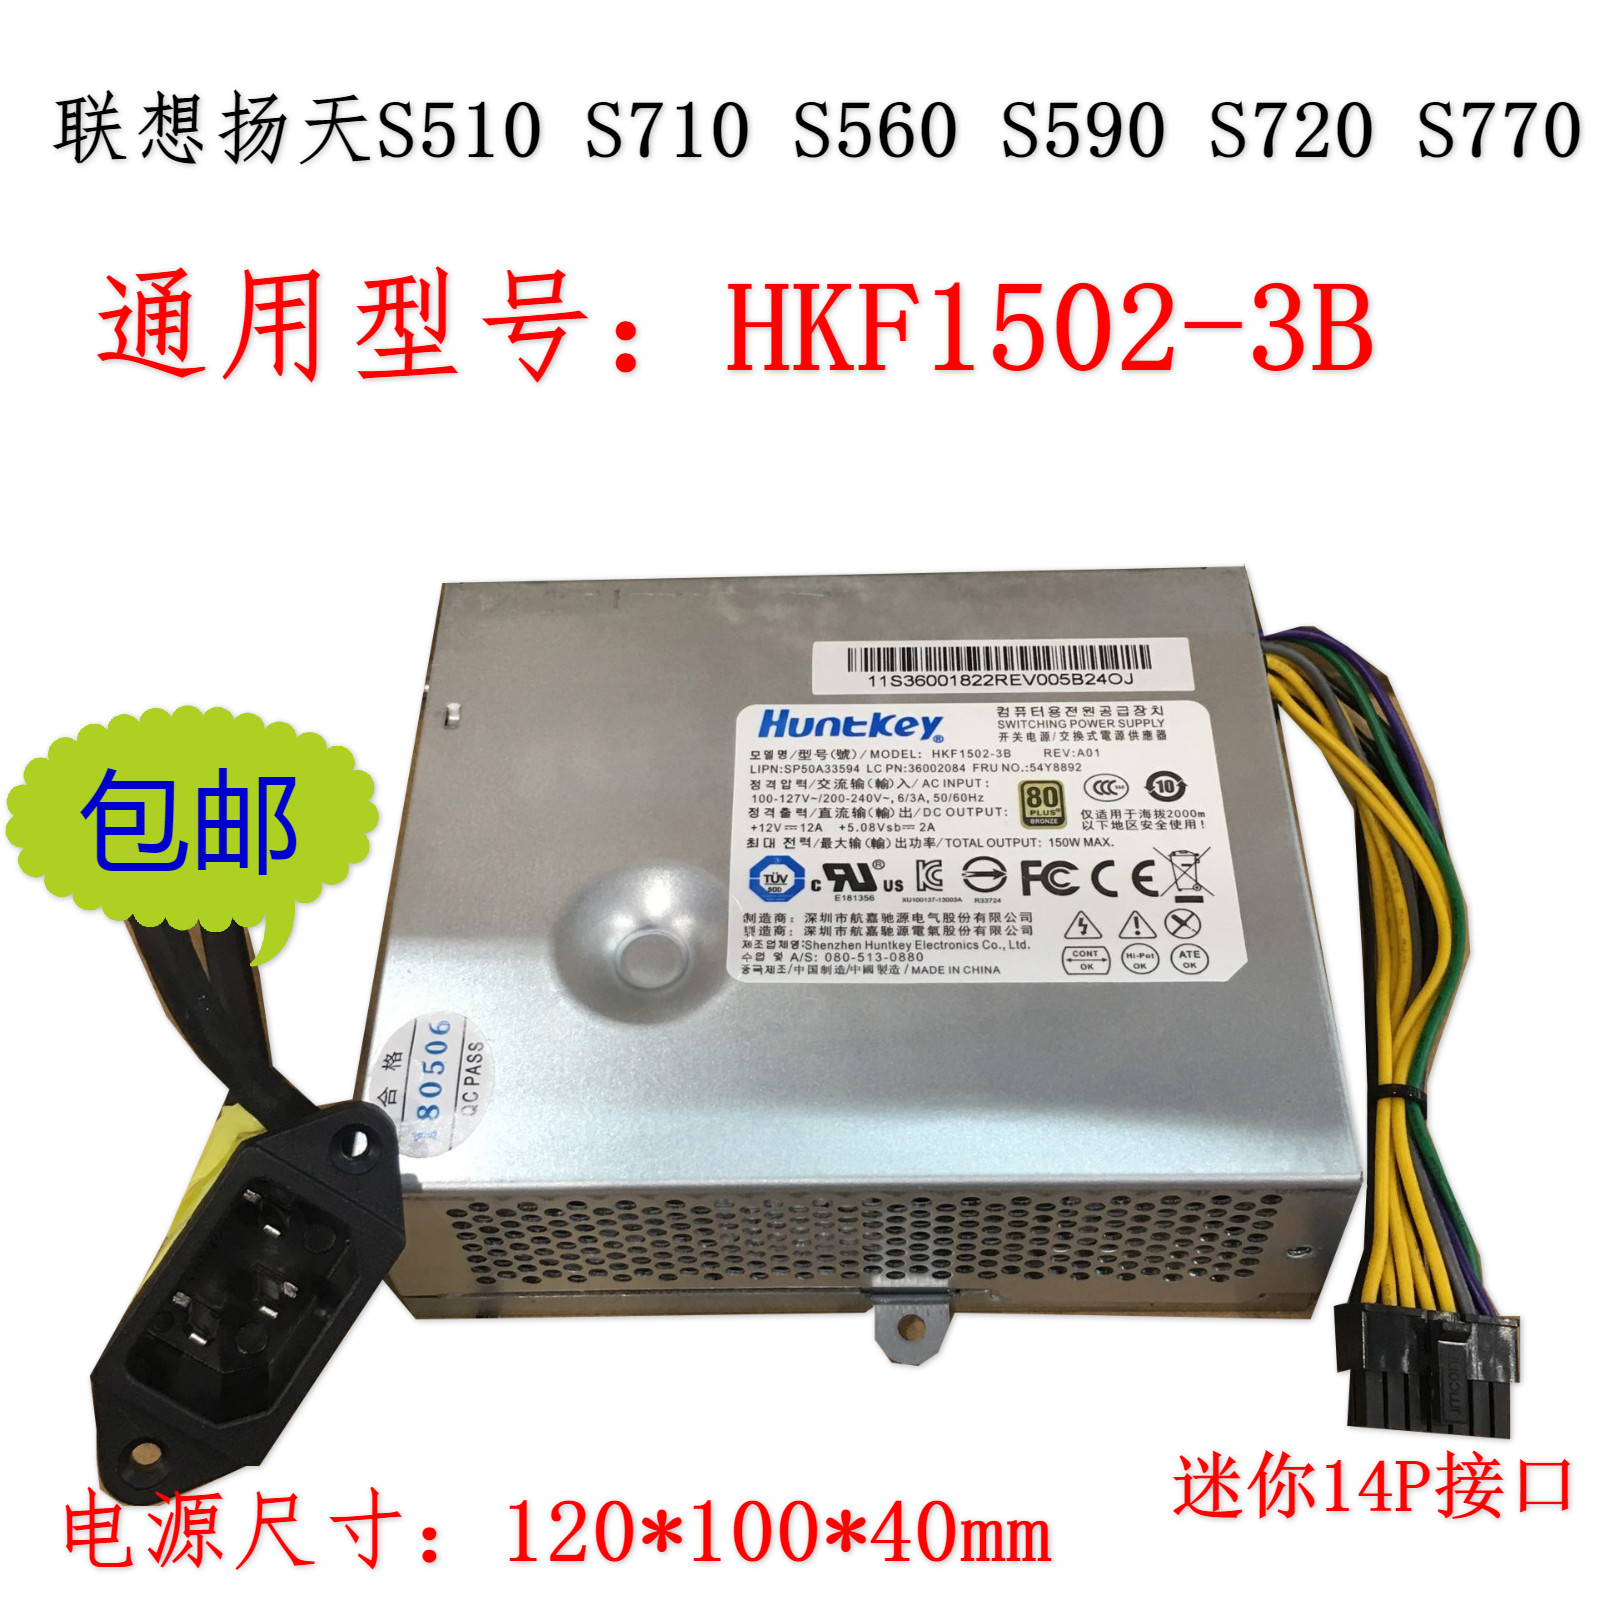 联想S510 S560 S590 S710 S720 一体机电源HKF1502-3B APA005